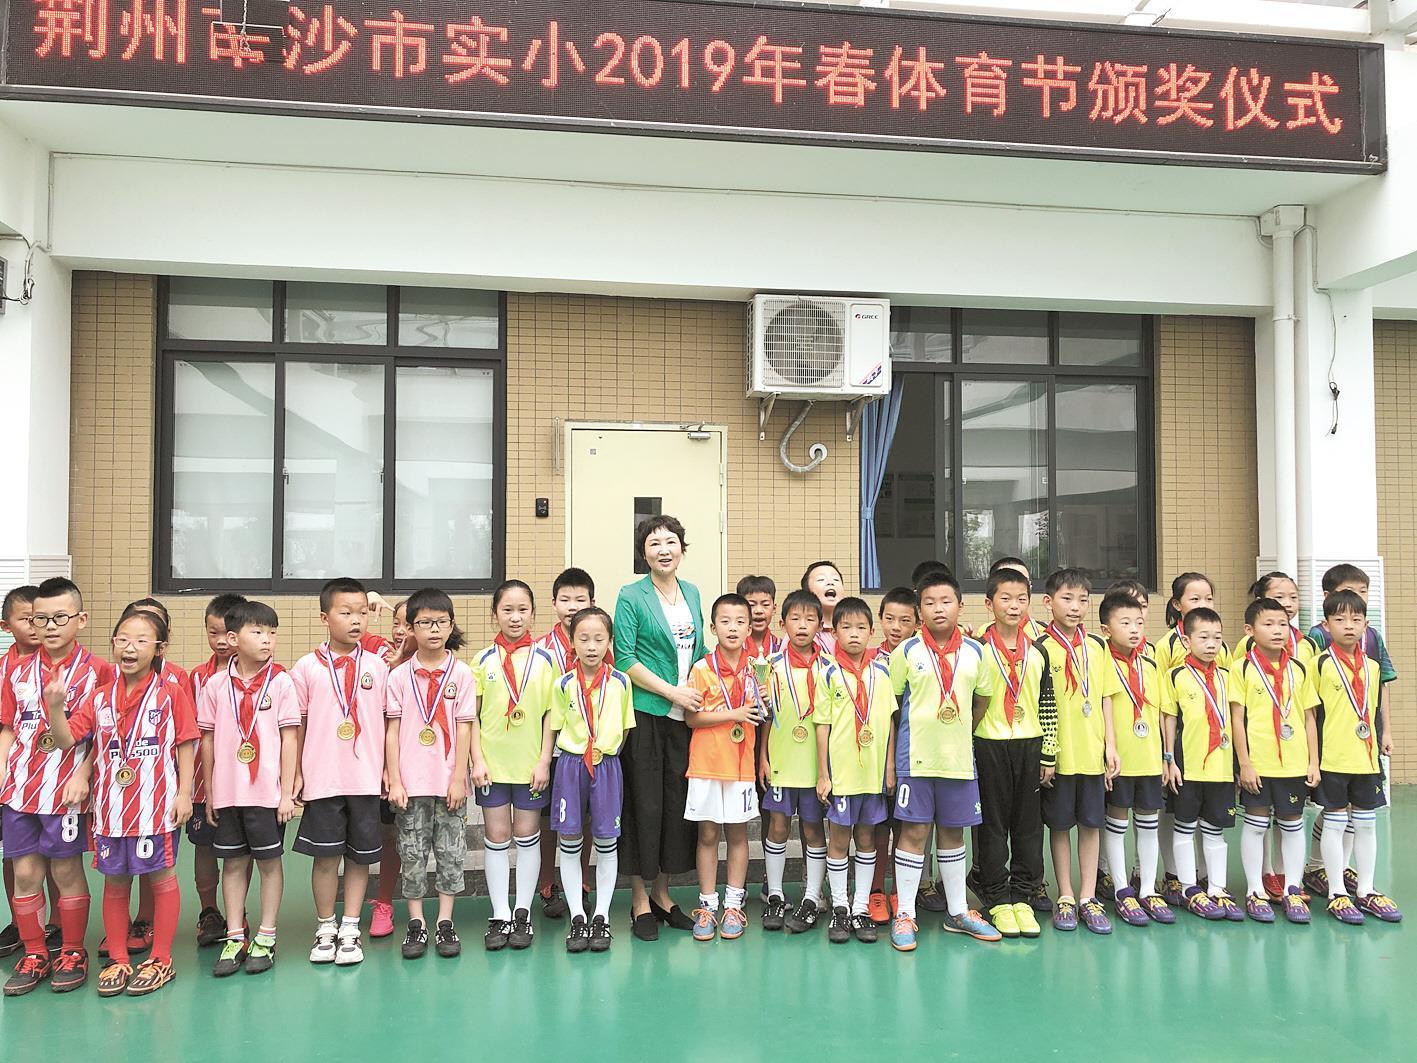 沙市实验小学校长杨丽清 “体育让孩子们 喜欢上学”